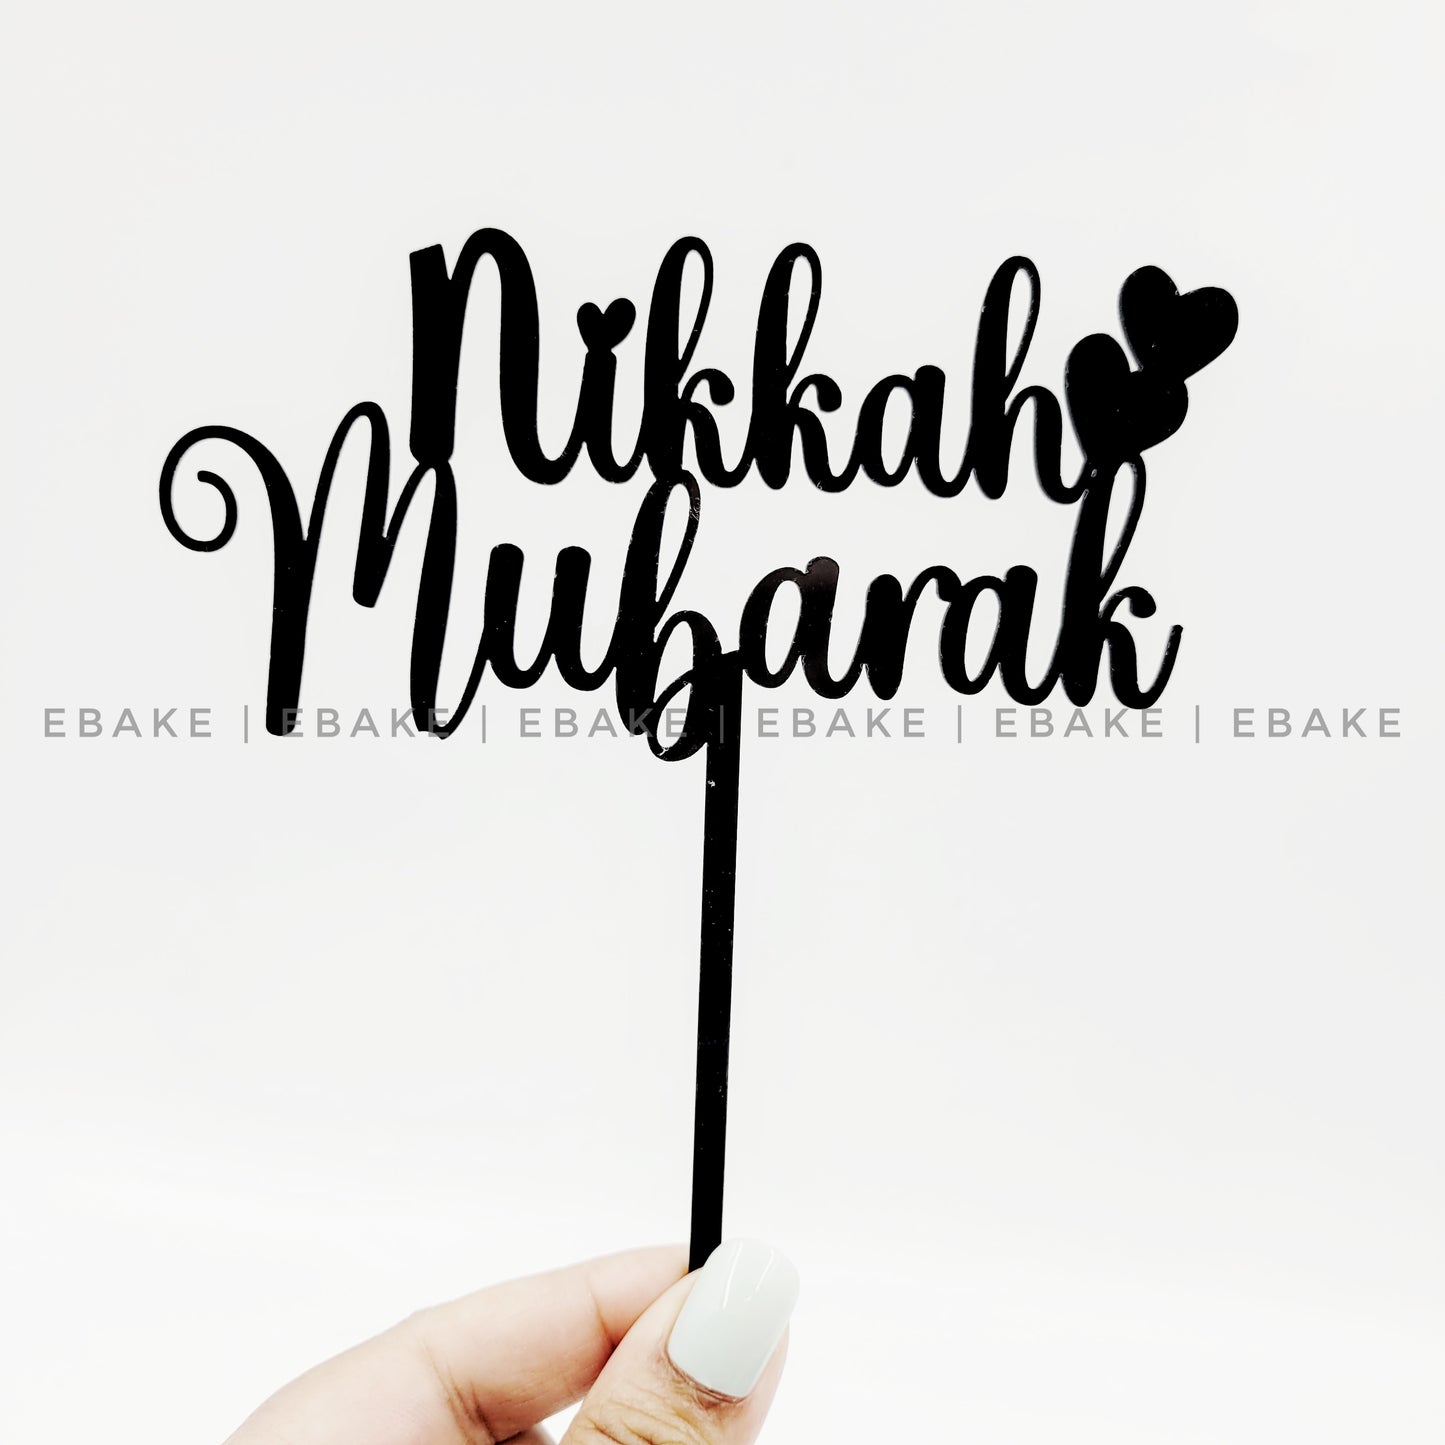 Nikkah Mubarak Cake Topper Black